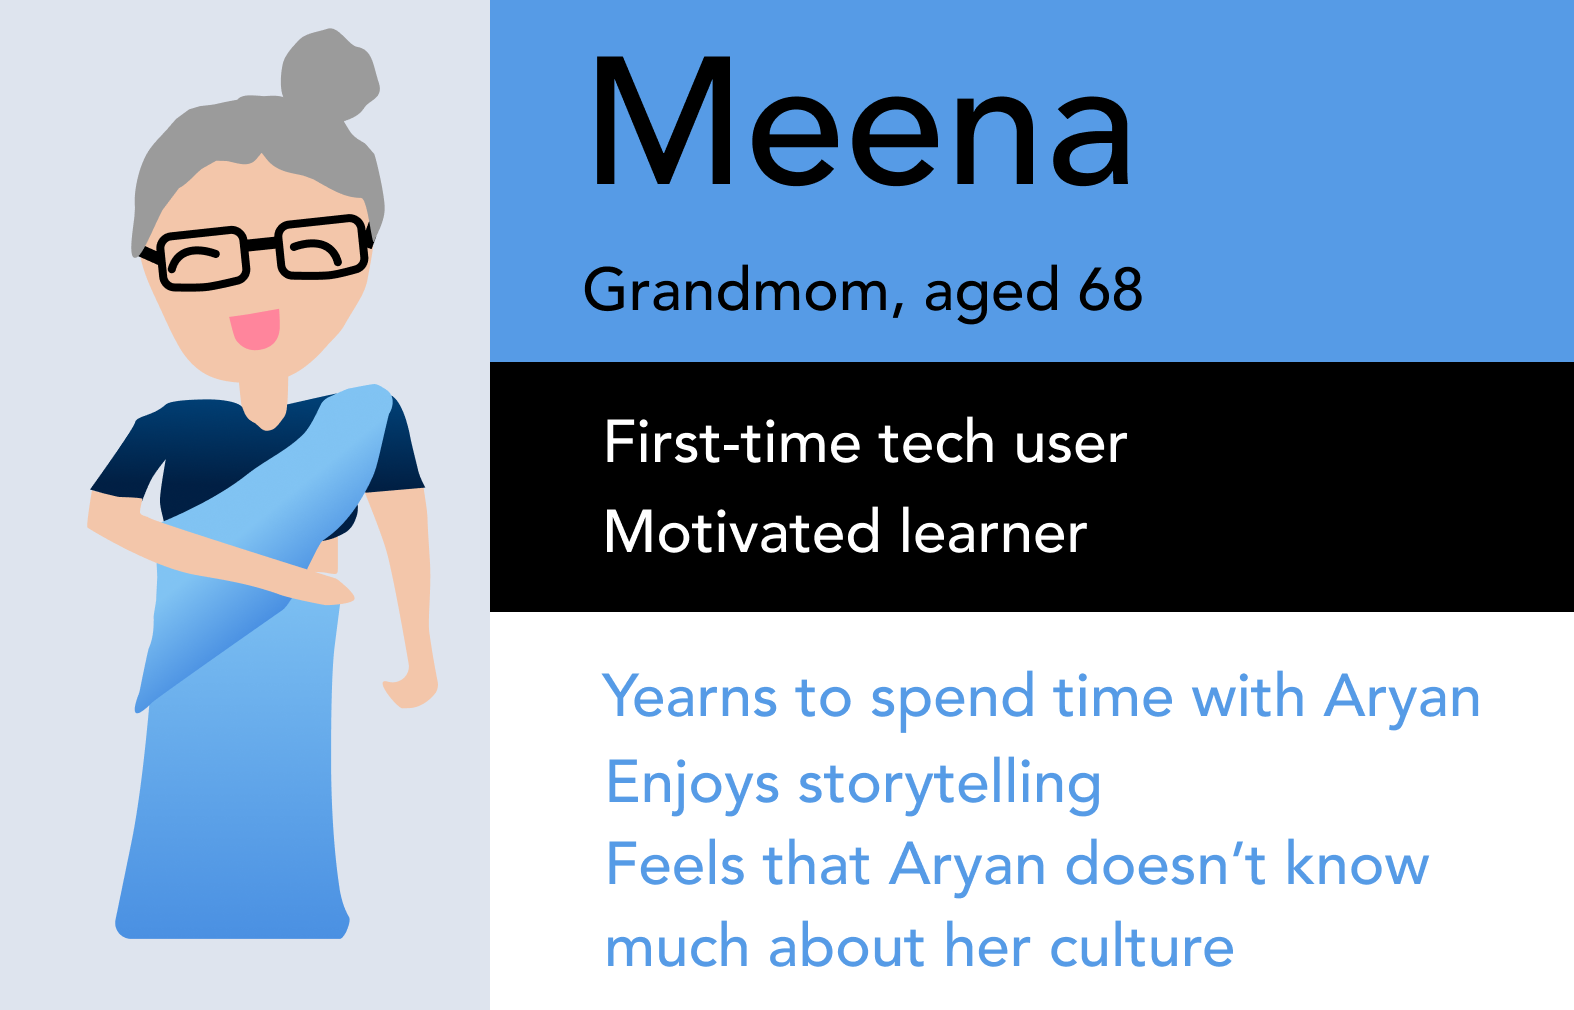 Persona 1: Meena